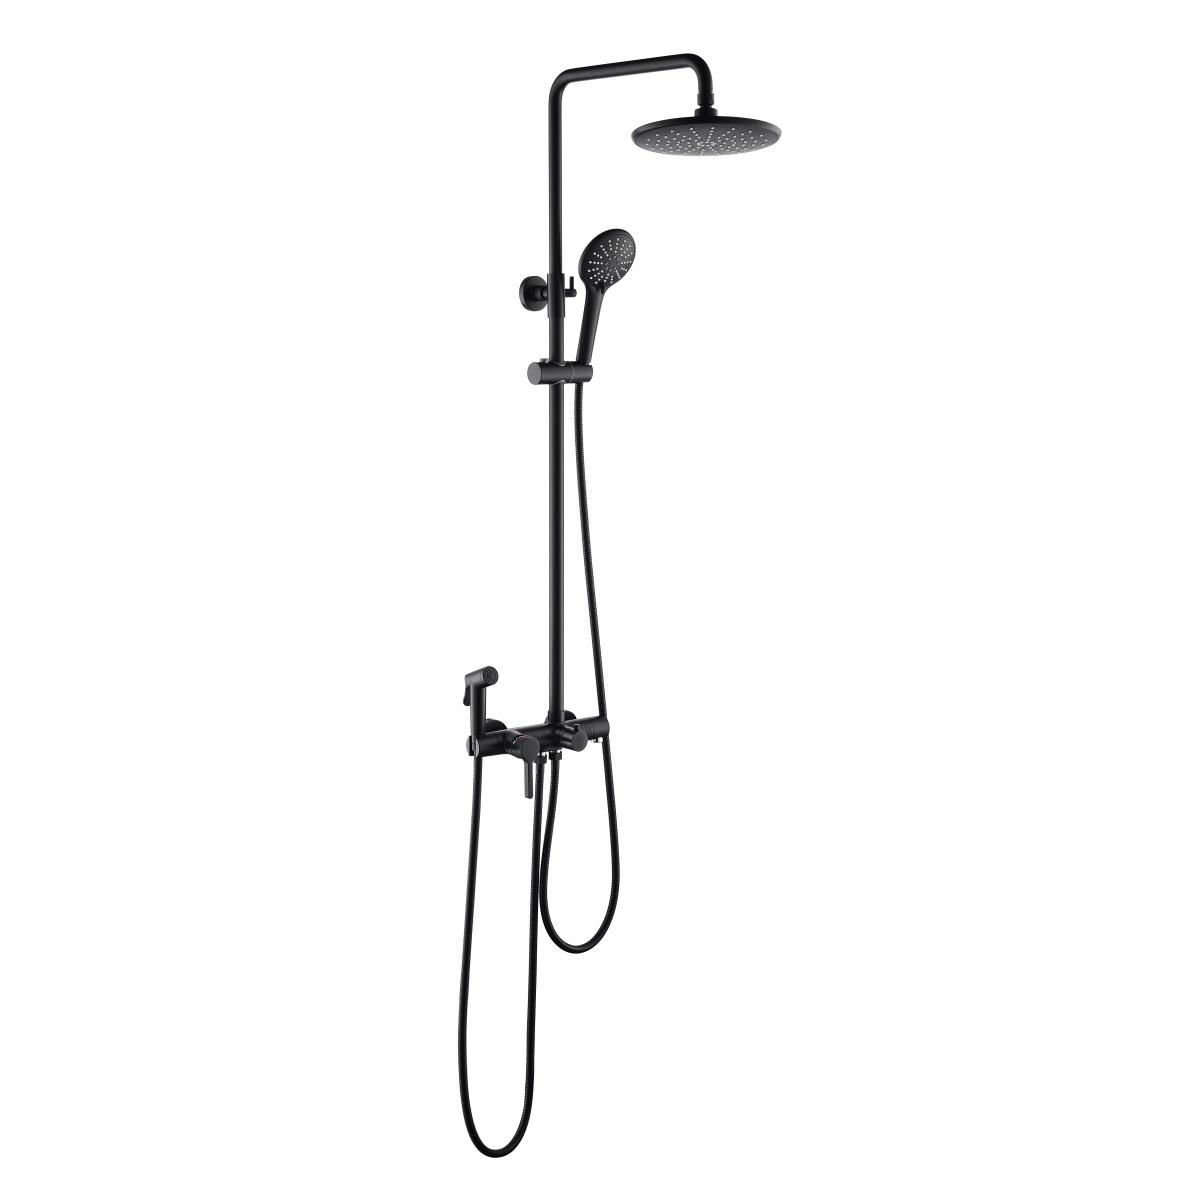 Cột sen tắm đa năng YS34244, cột tắm mưa có vòi, vòi và vòi phun, có thể điều chỉnh độ cao;